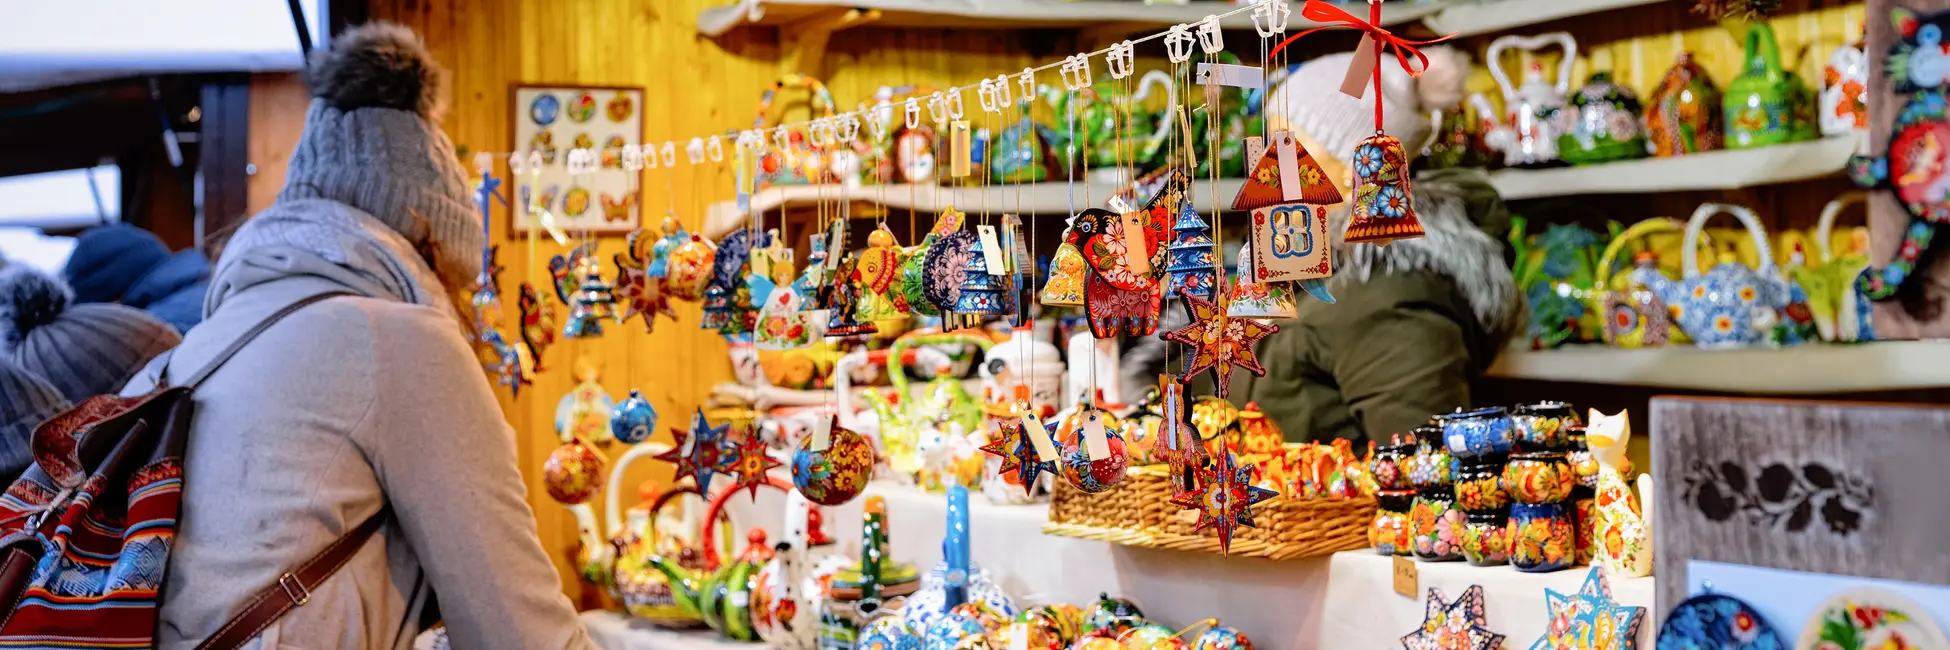 Stand de décorations artisanales au marché de Noël 